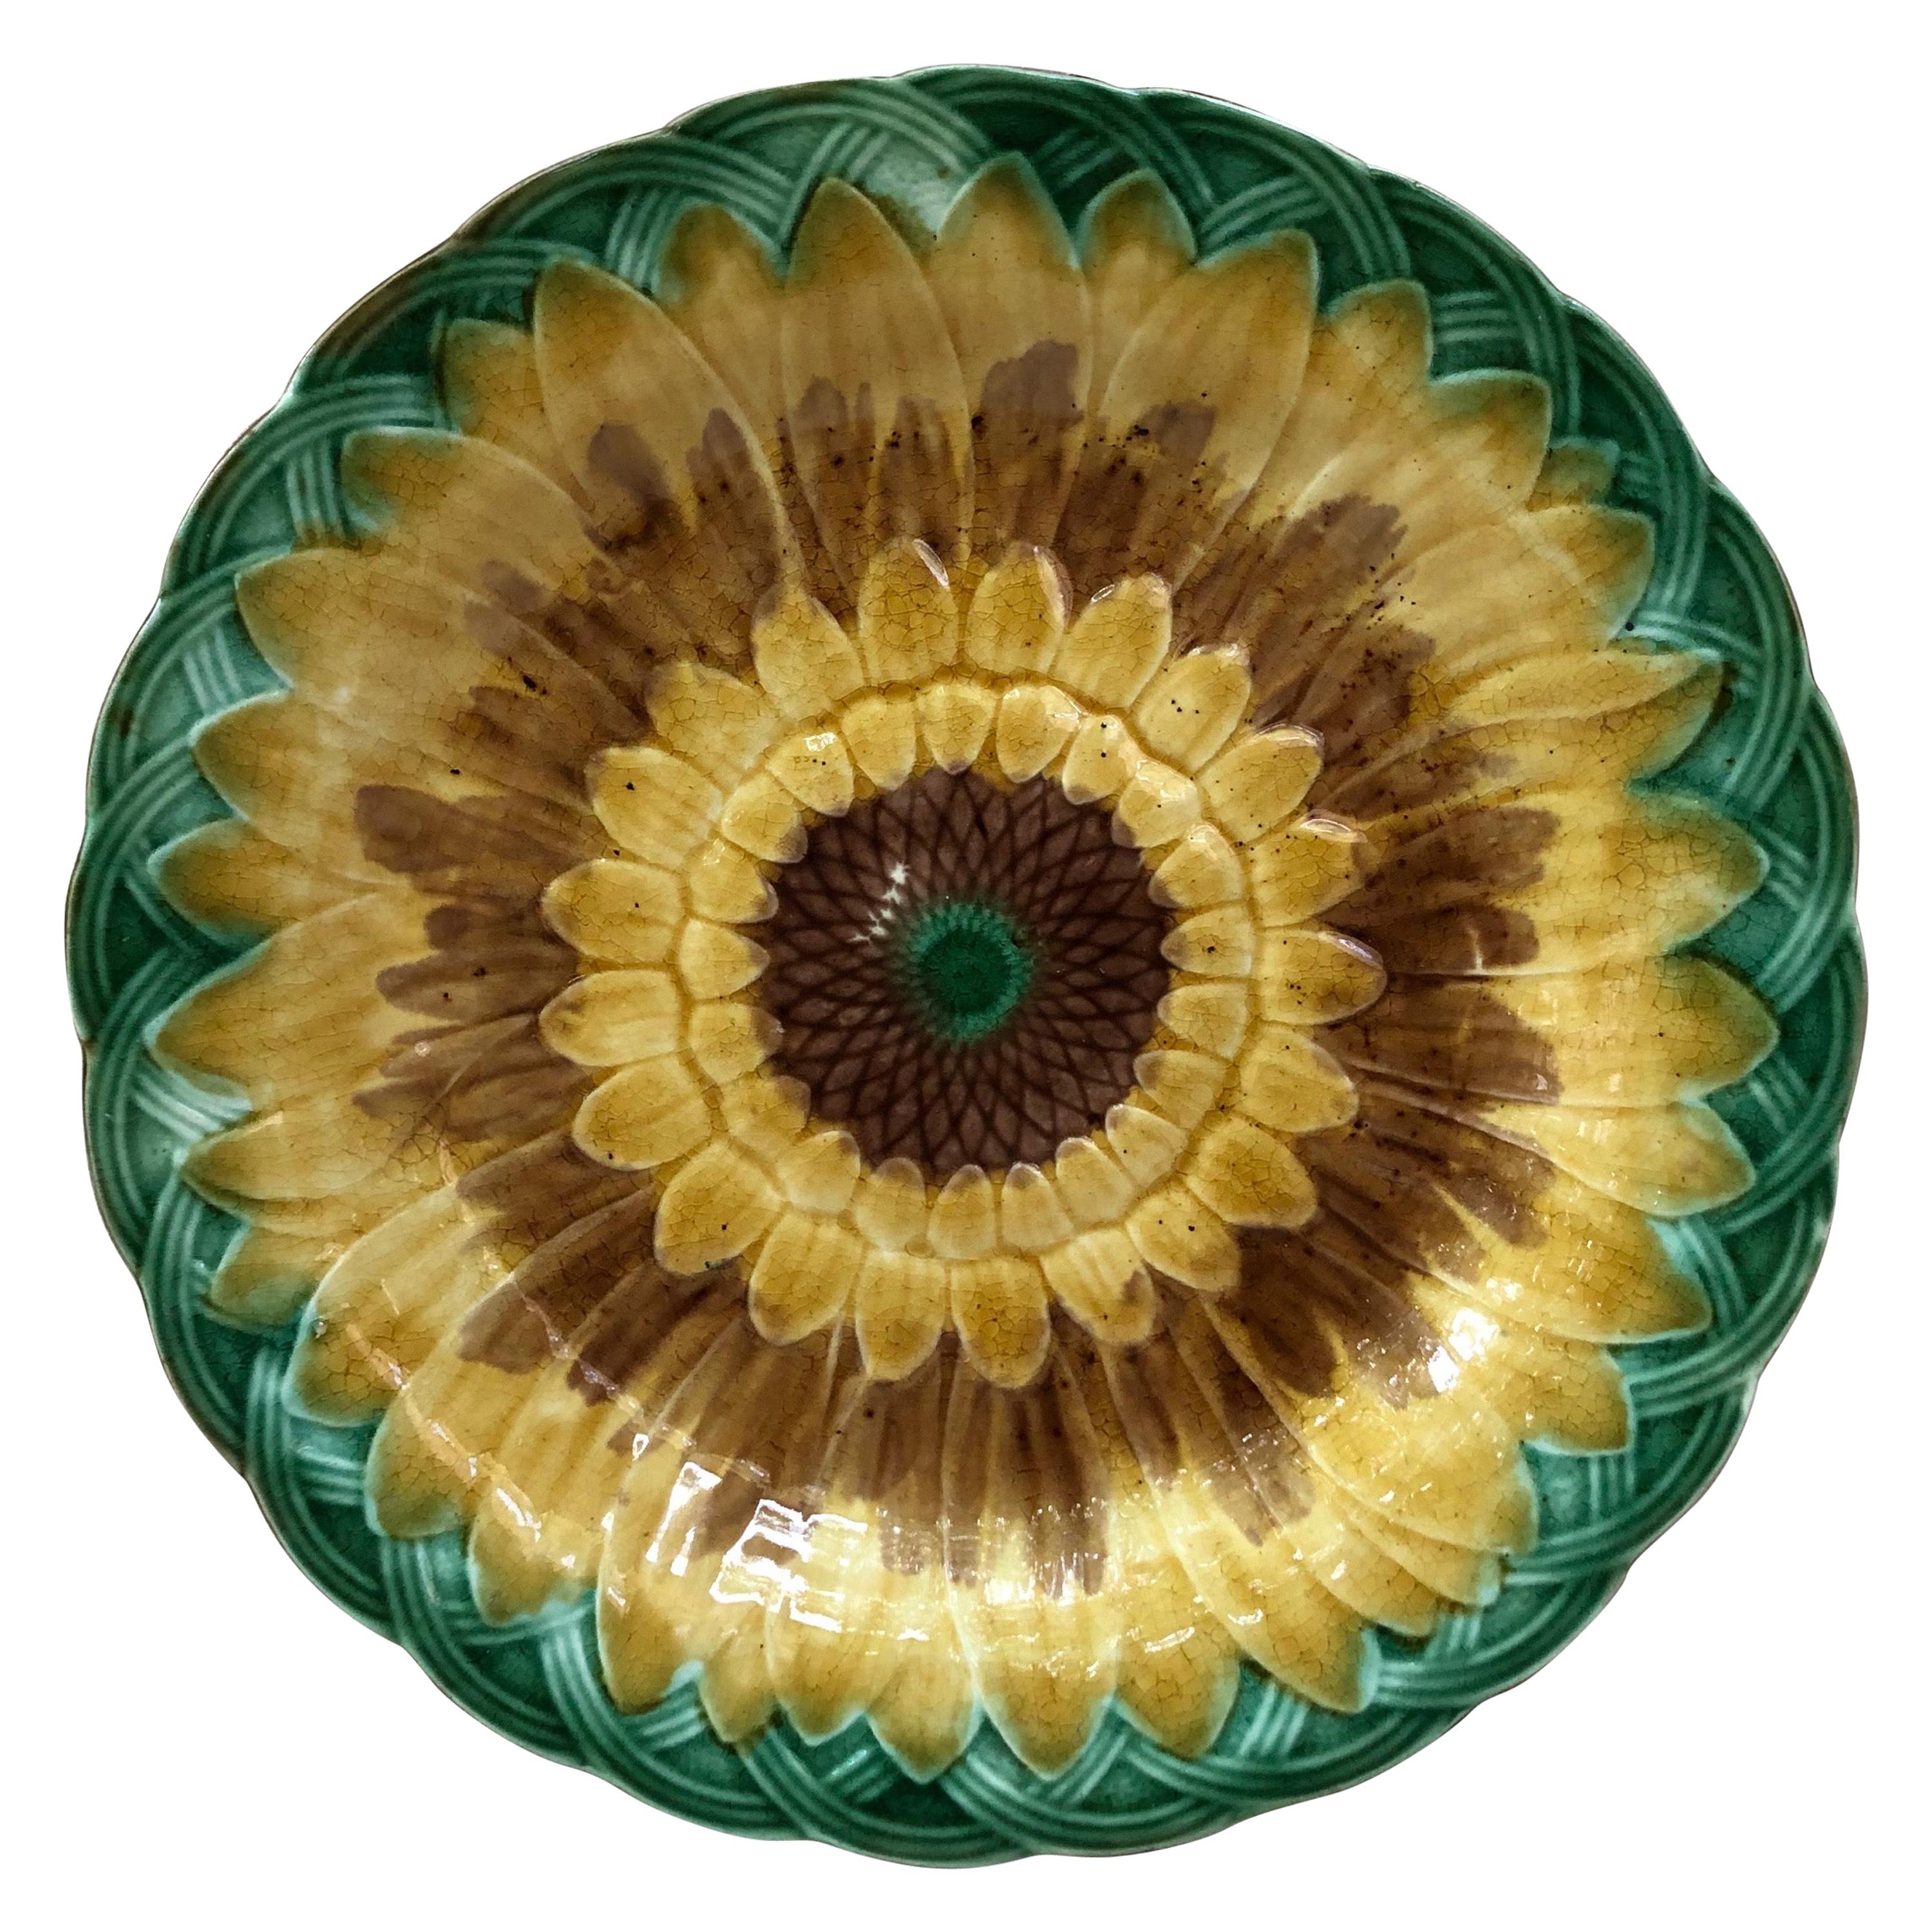 19th Century Majolica Sunflower Plate Wedgwood